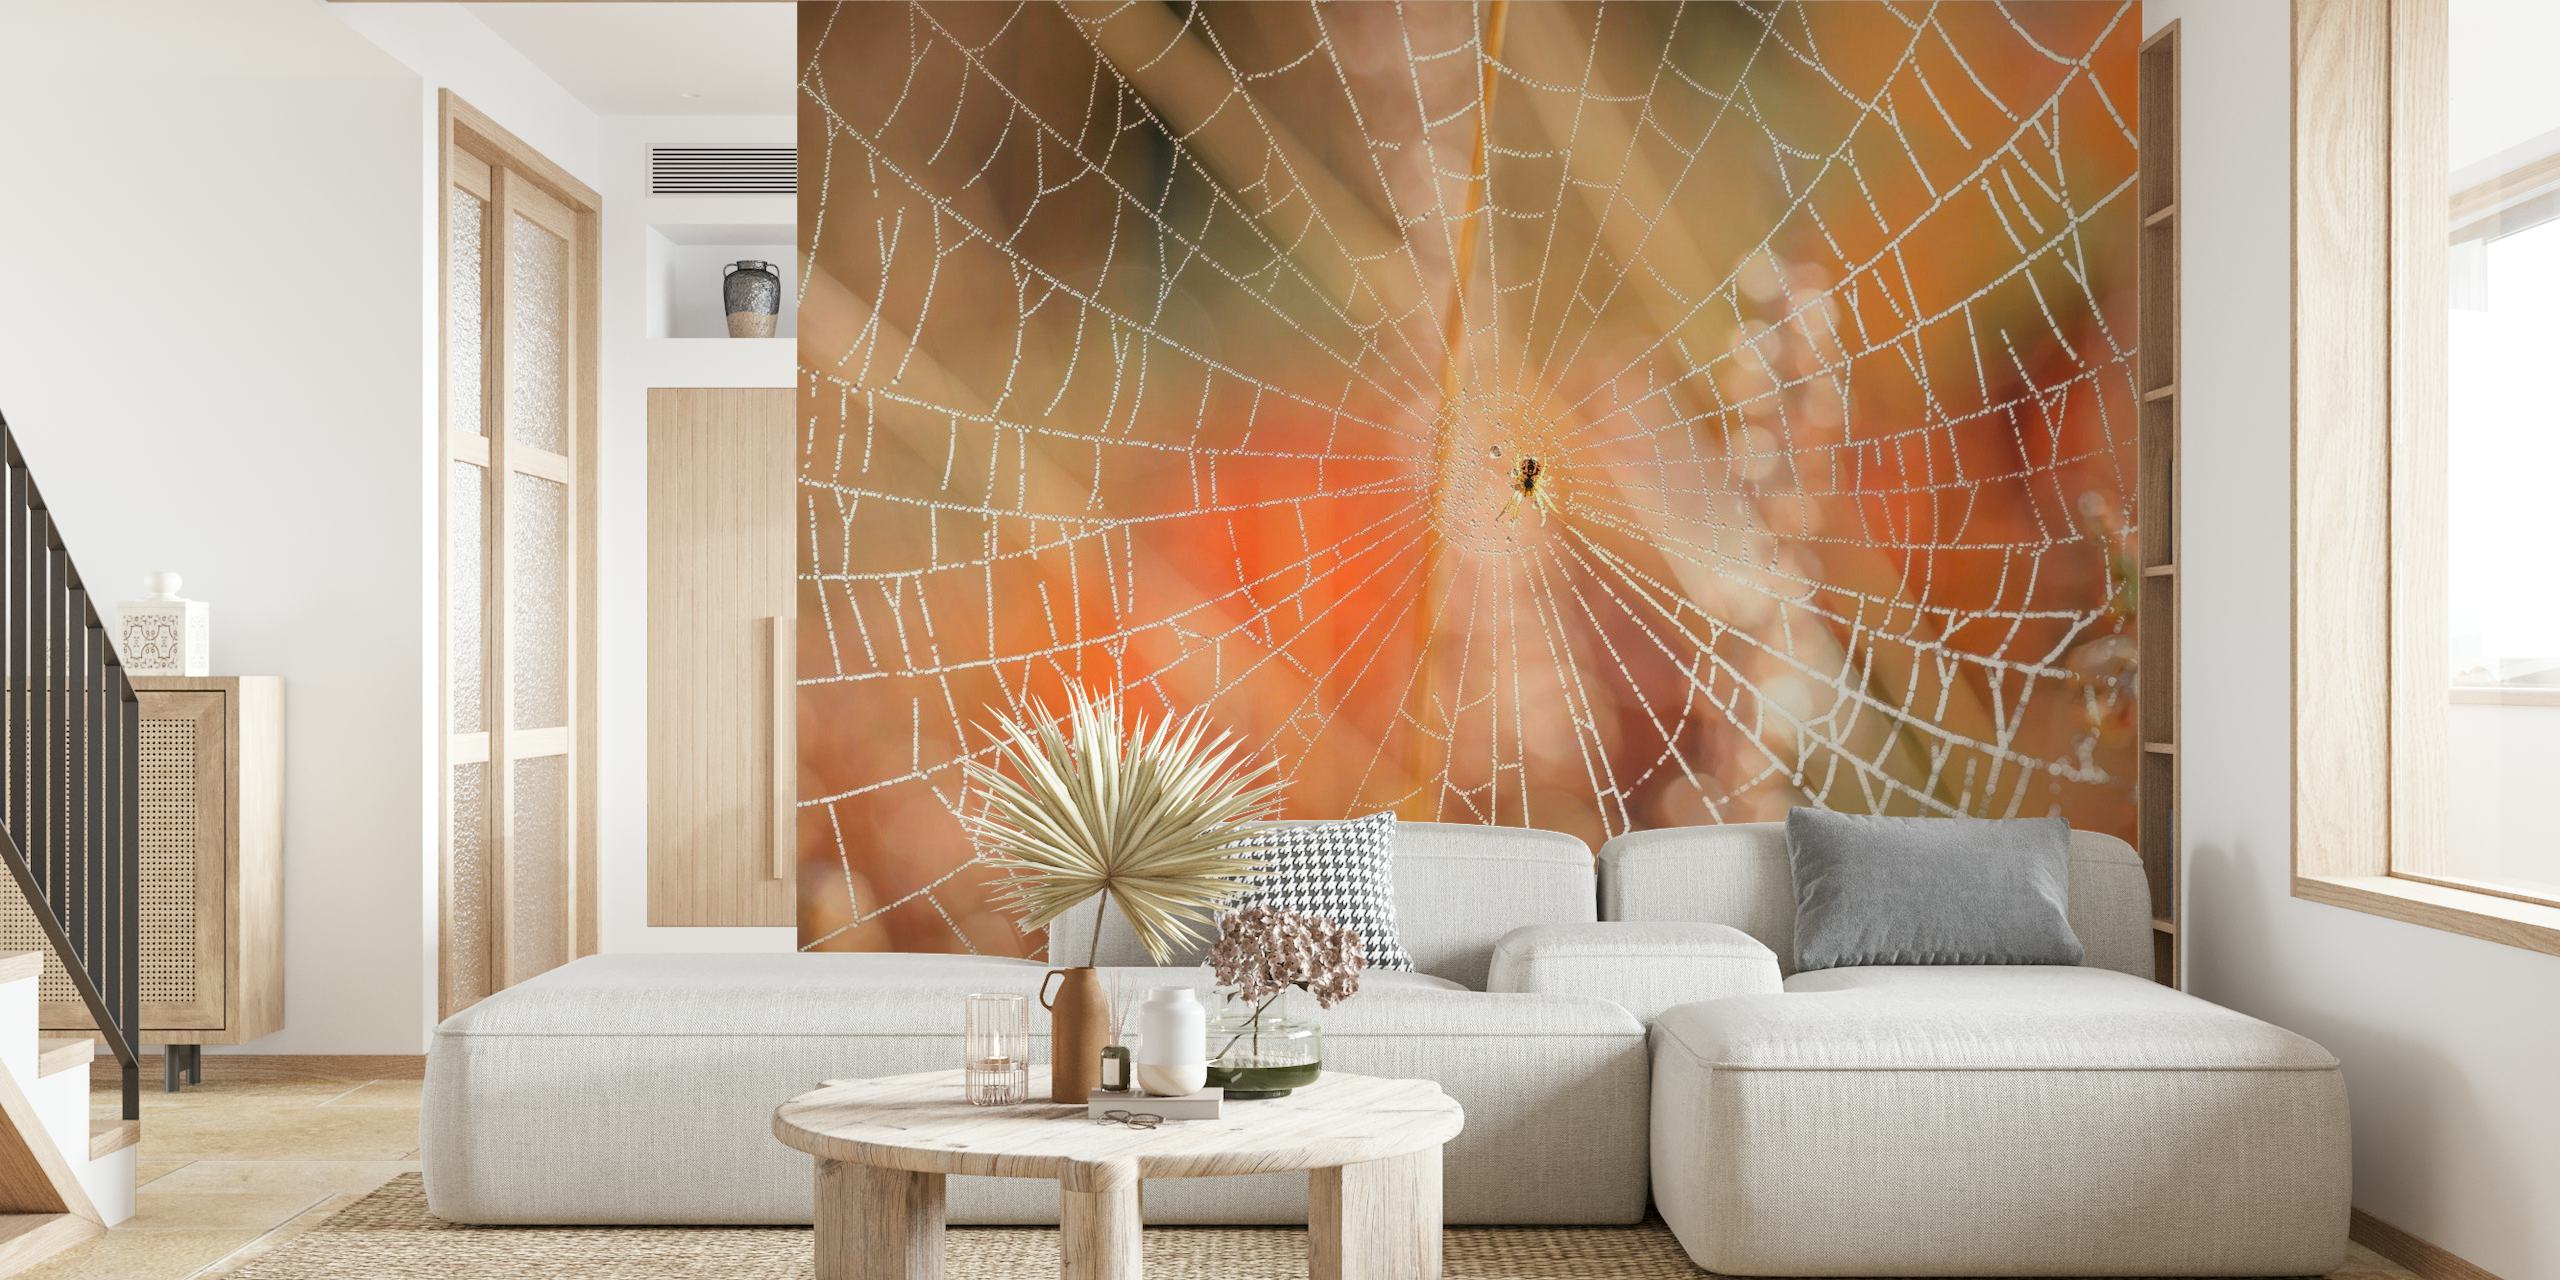 Intrincado mural de tela de araña con rocío de la mañana